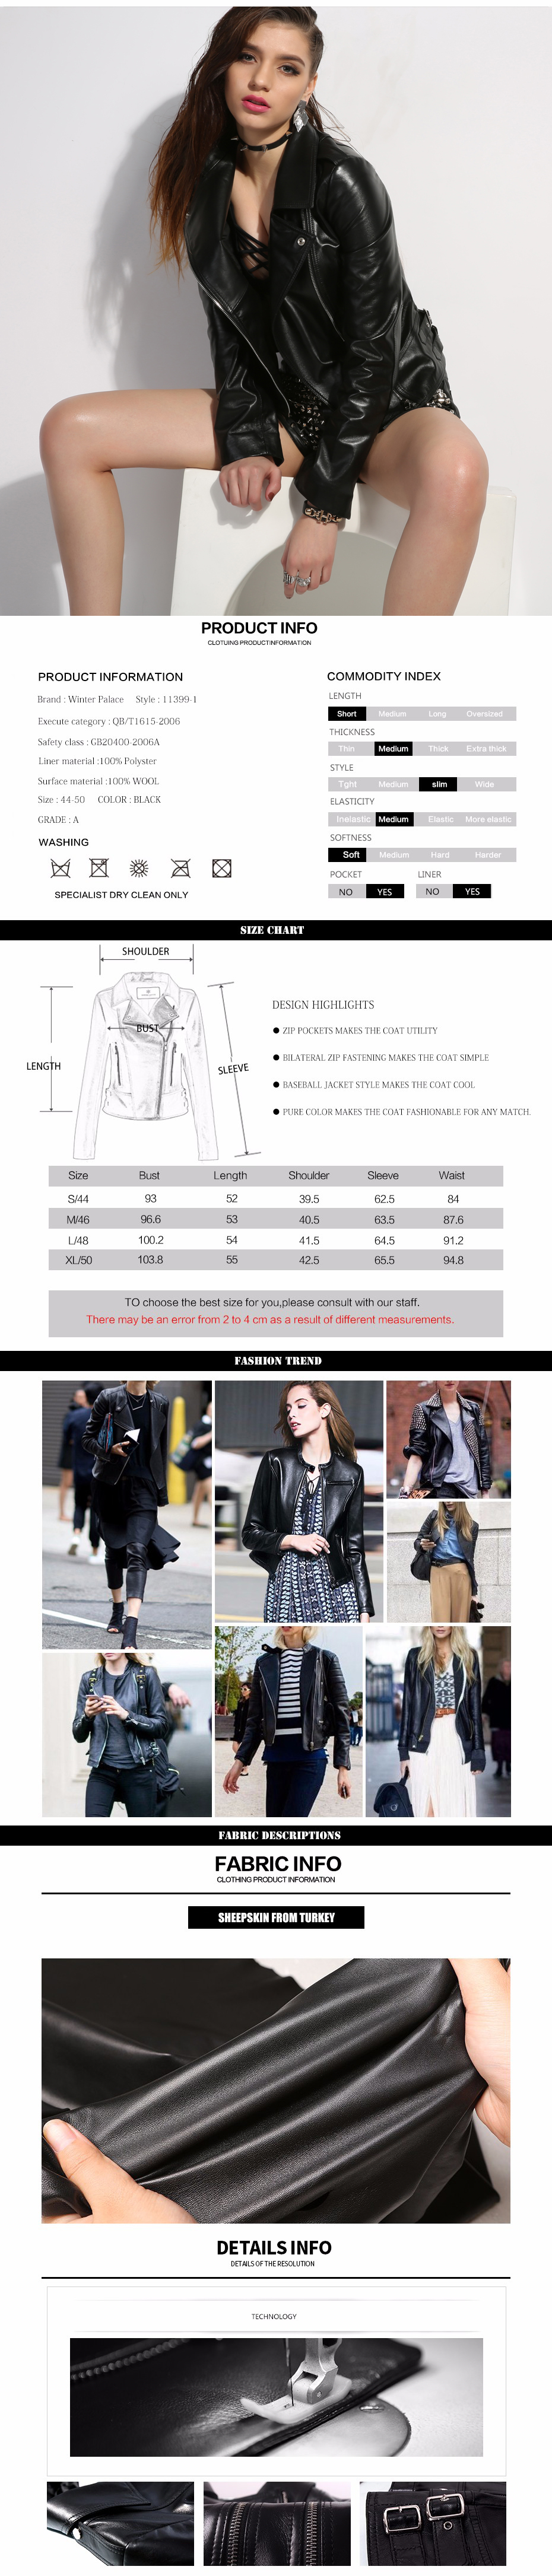 WINTER-PALACE-Fashion-leather-jacket-women-classic-Short-female-leather-jacket-locomotive-style-wome-32786301840